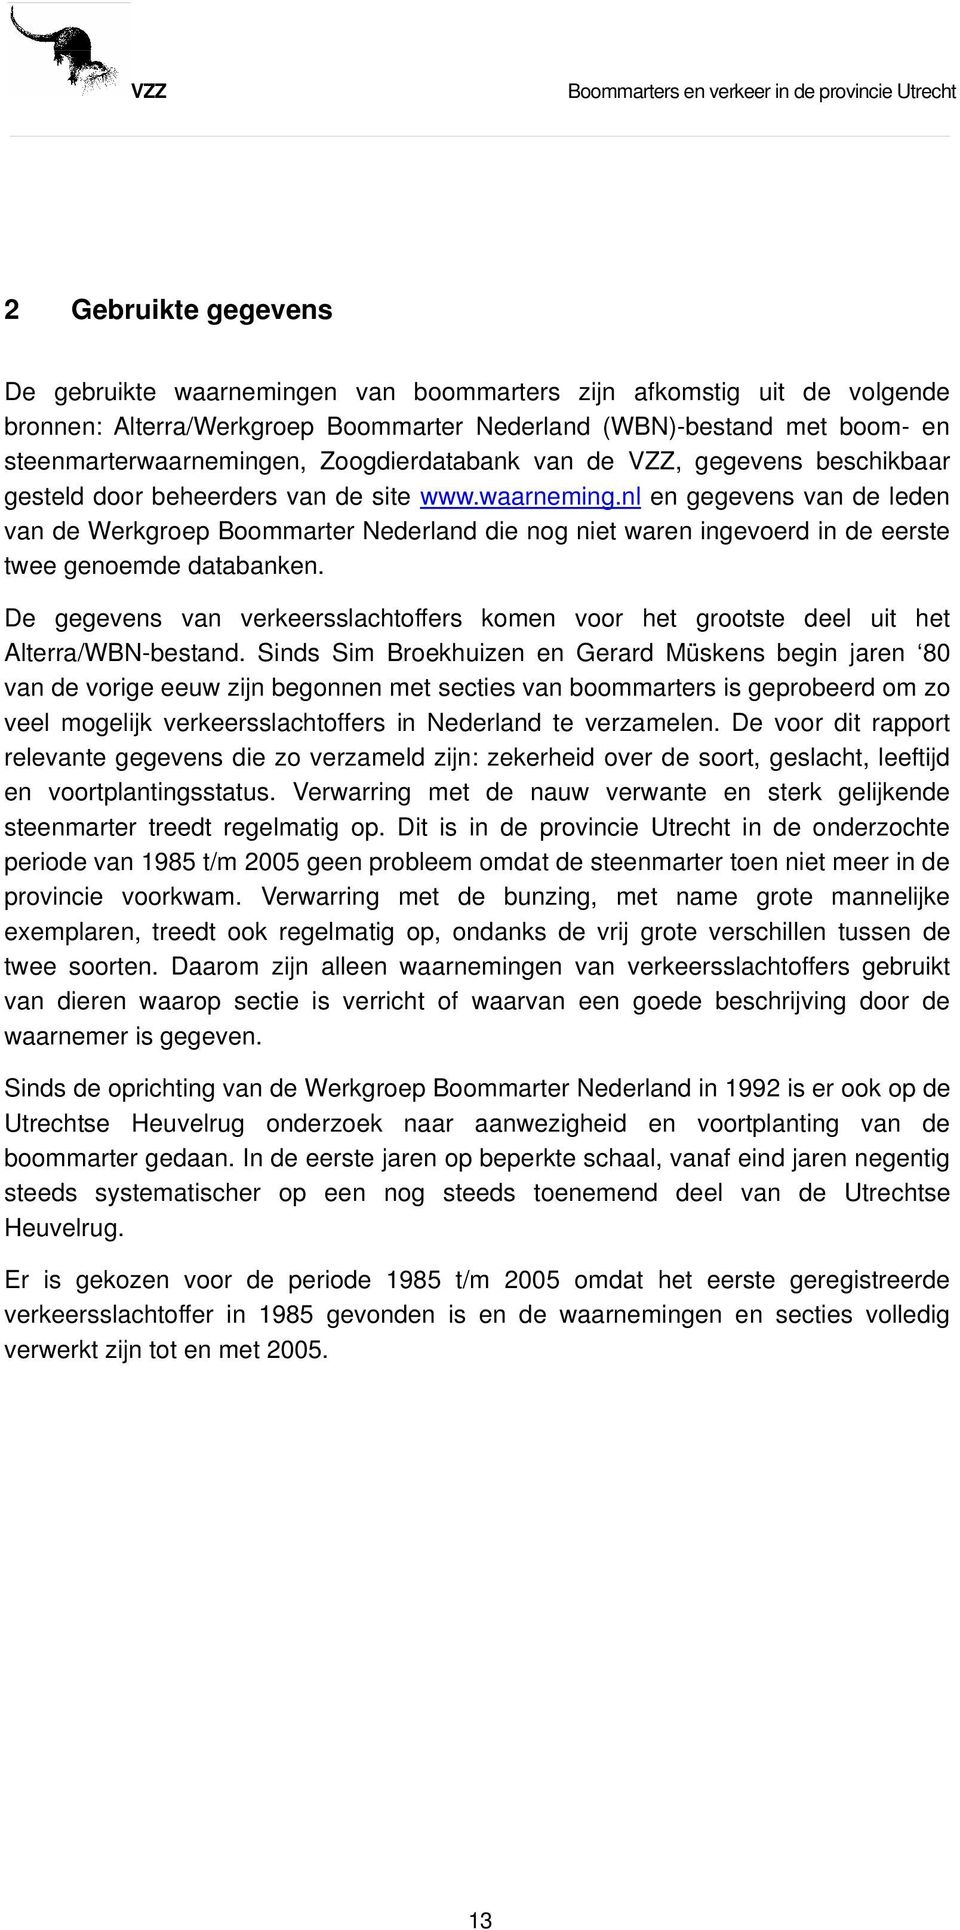 nl en gegevens van de leden van de Werkgroep Boommarter Nederland die nog niet waren ingevoerd in de eerste twee genoemde databanken.